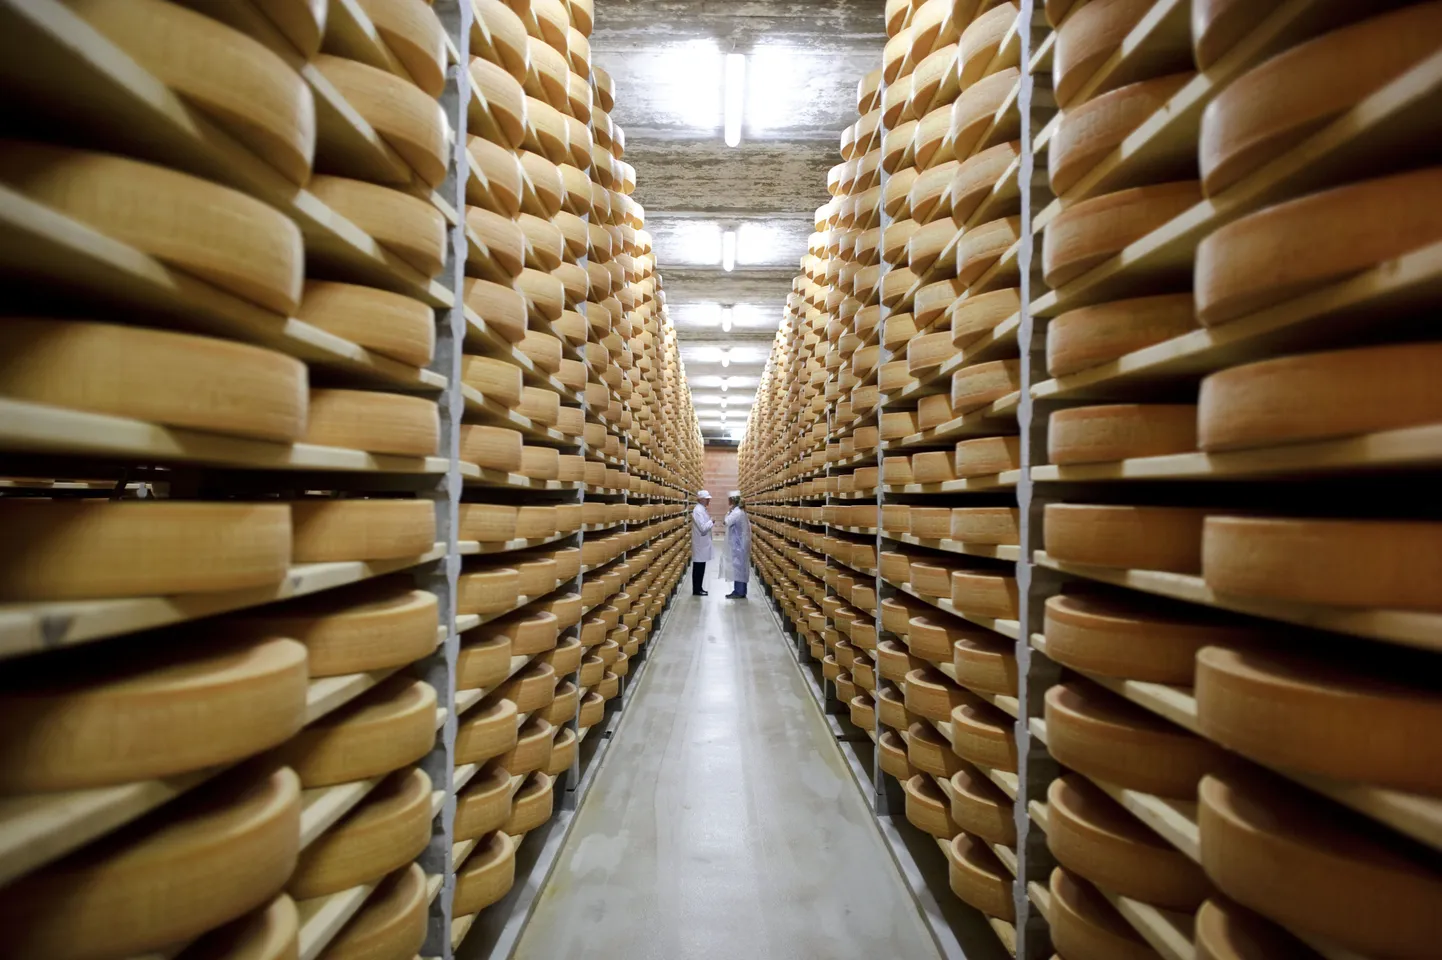 Uue tehase peamiseks toodanguks on juust ja pulbrid, kuna nendes tootegruppides on E-Piimal pikaajalised kogemused. Pilt on illustratiivne.